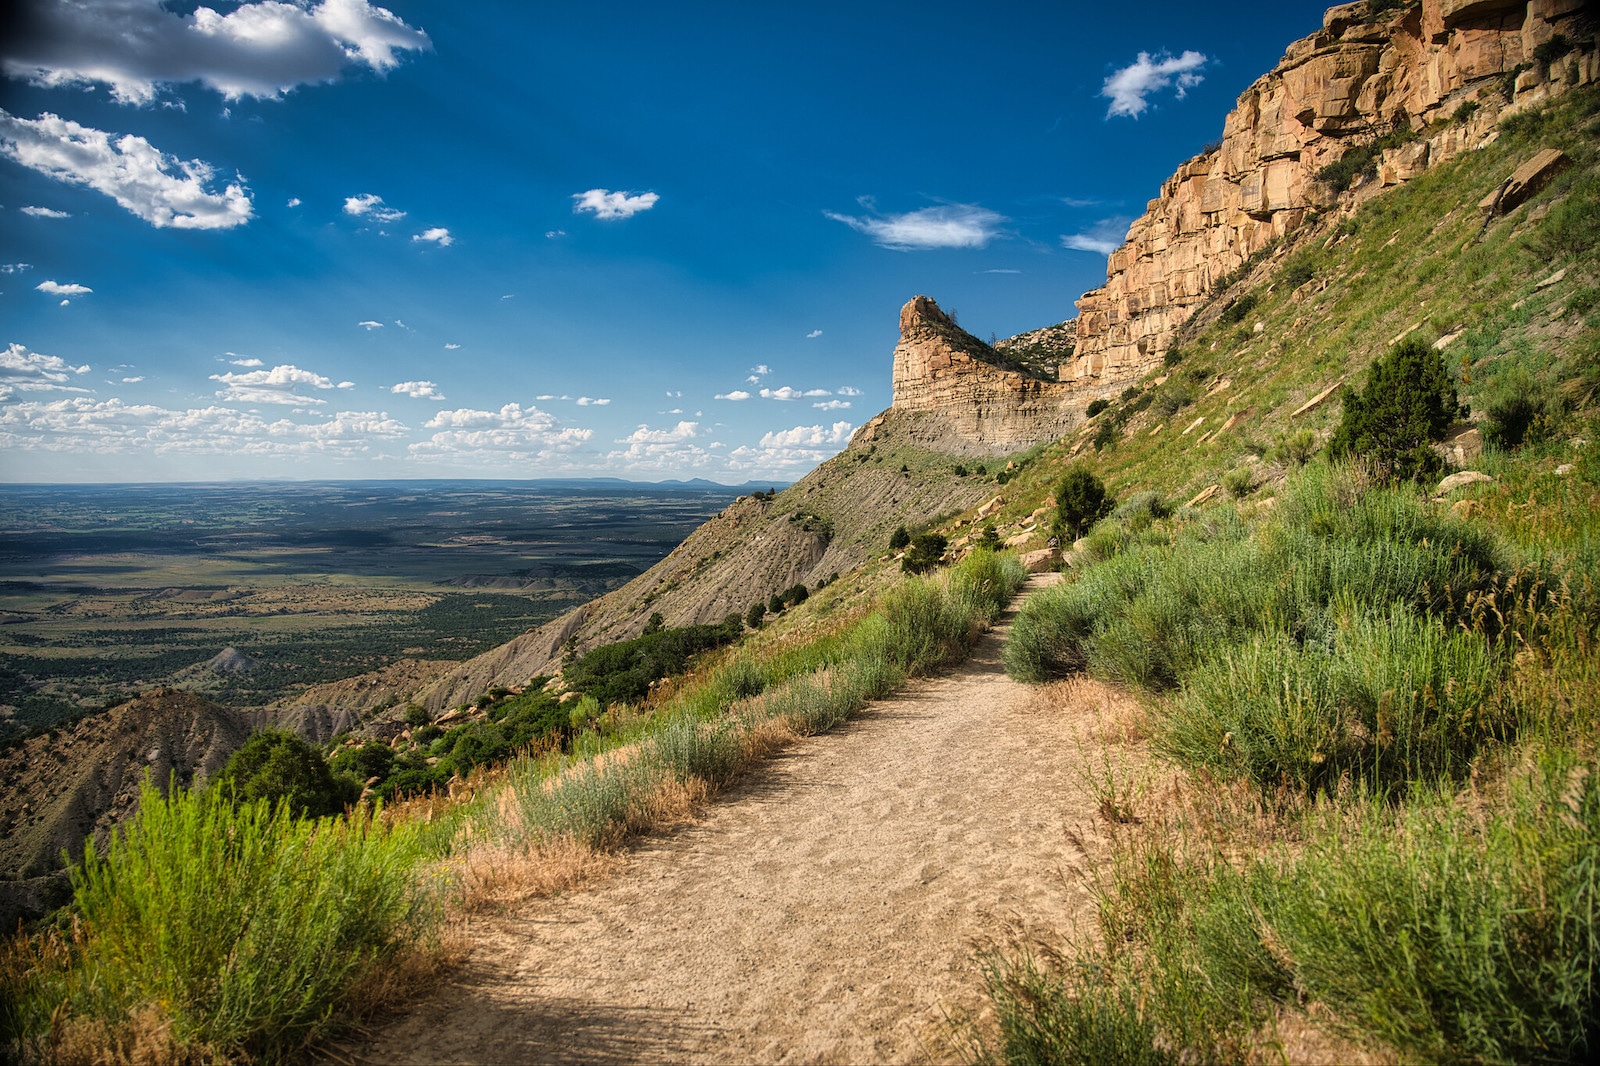 Mesa Verde National Park, Colorado